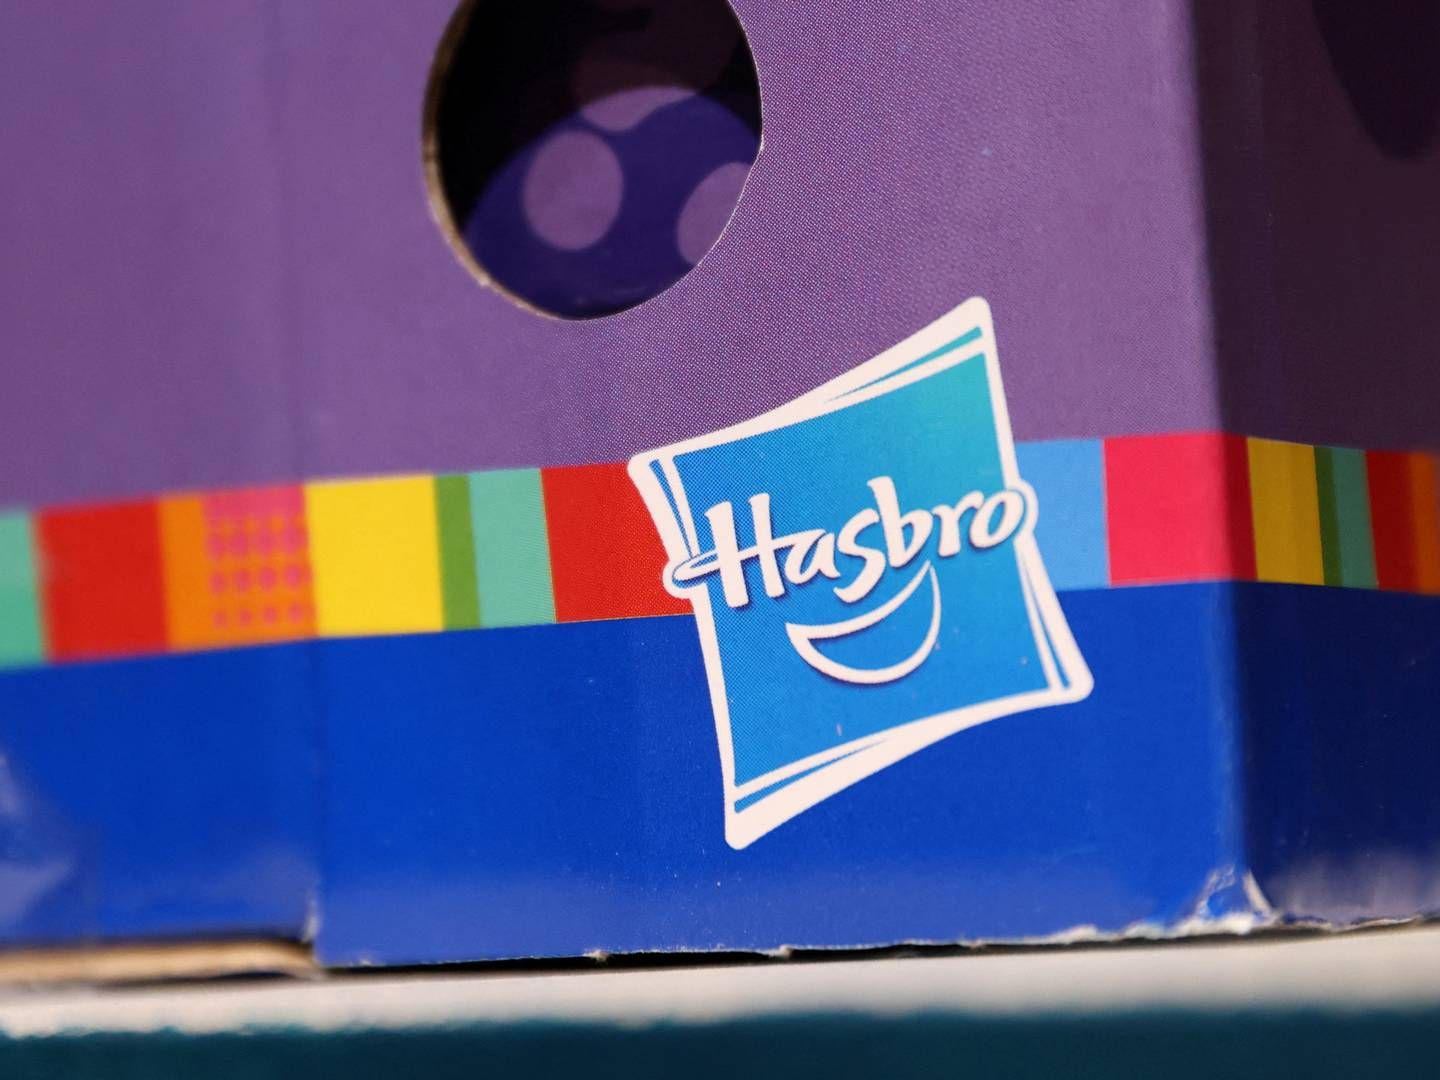 Hasbro venter nu et fald i omsætningen på 13-15 pct. | Foto: Andrew Kelly